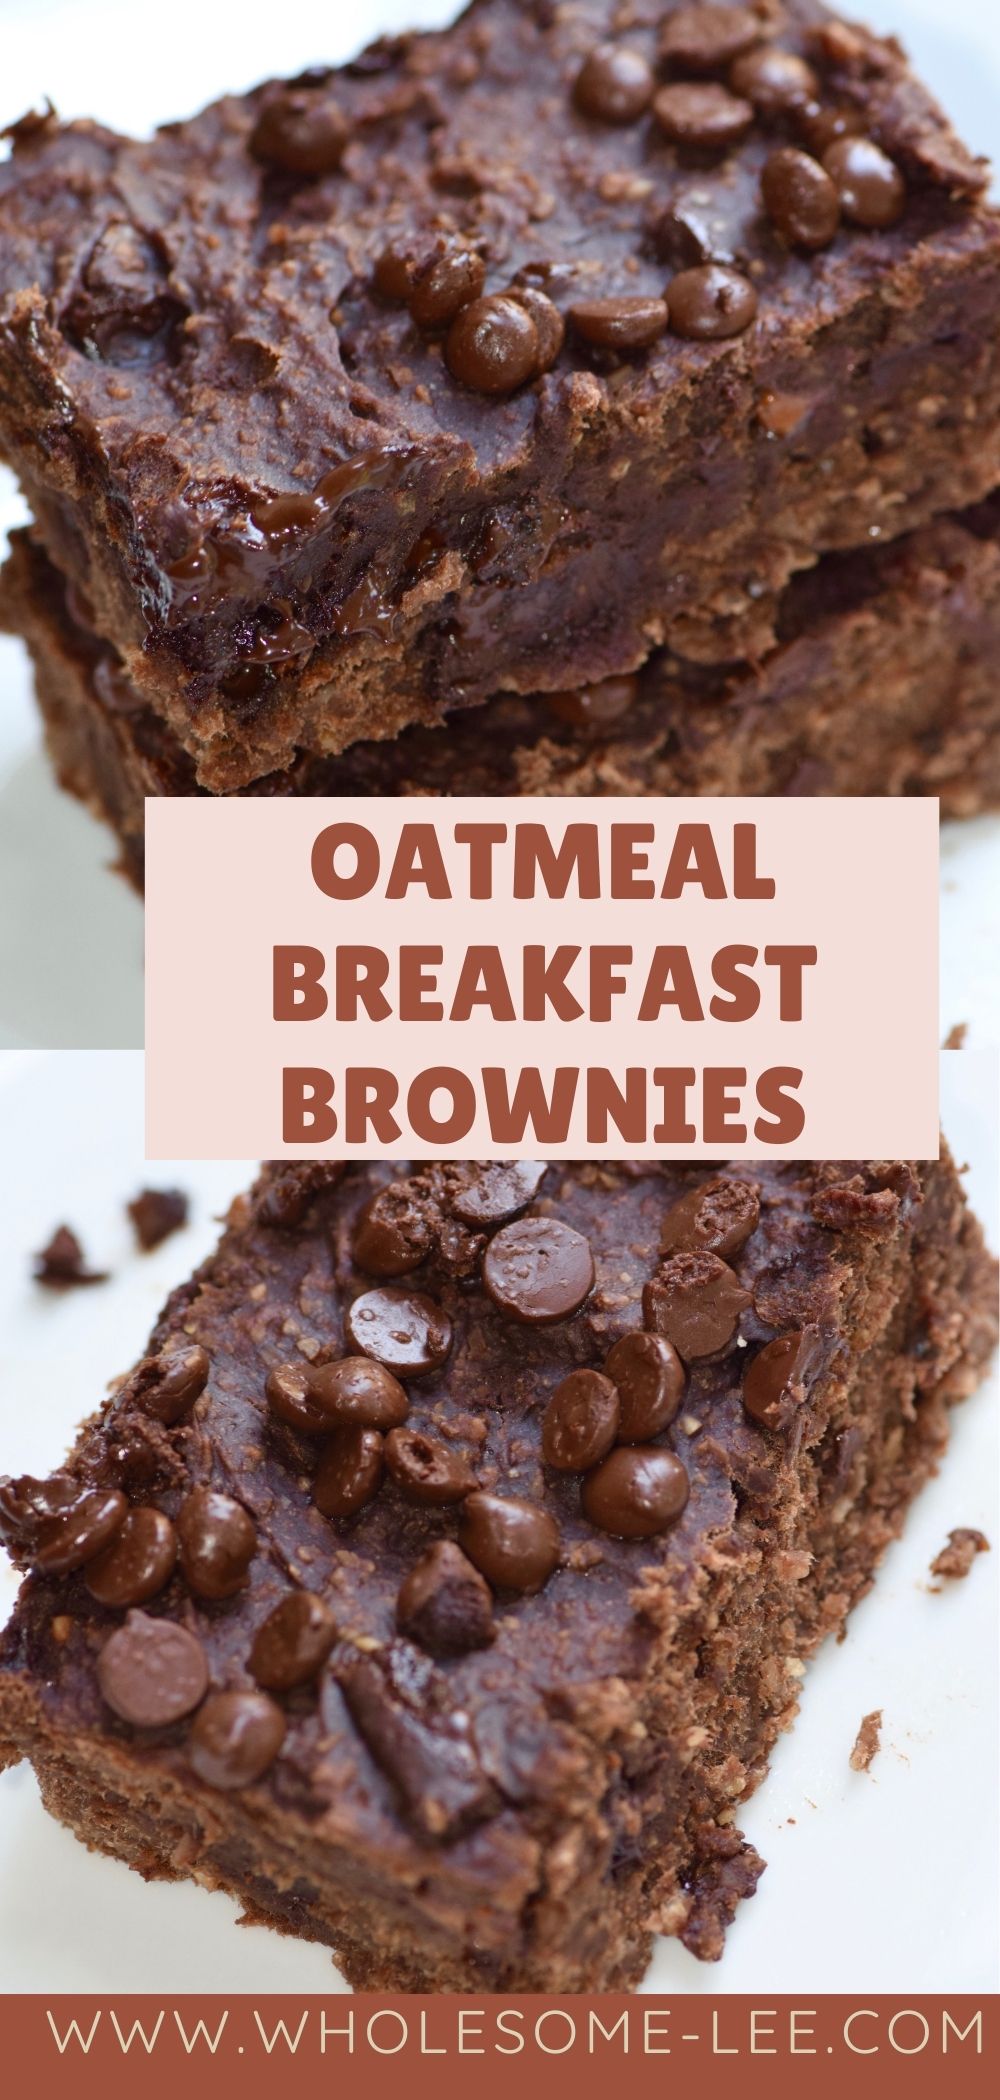 Oatmeal breakfast brownies